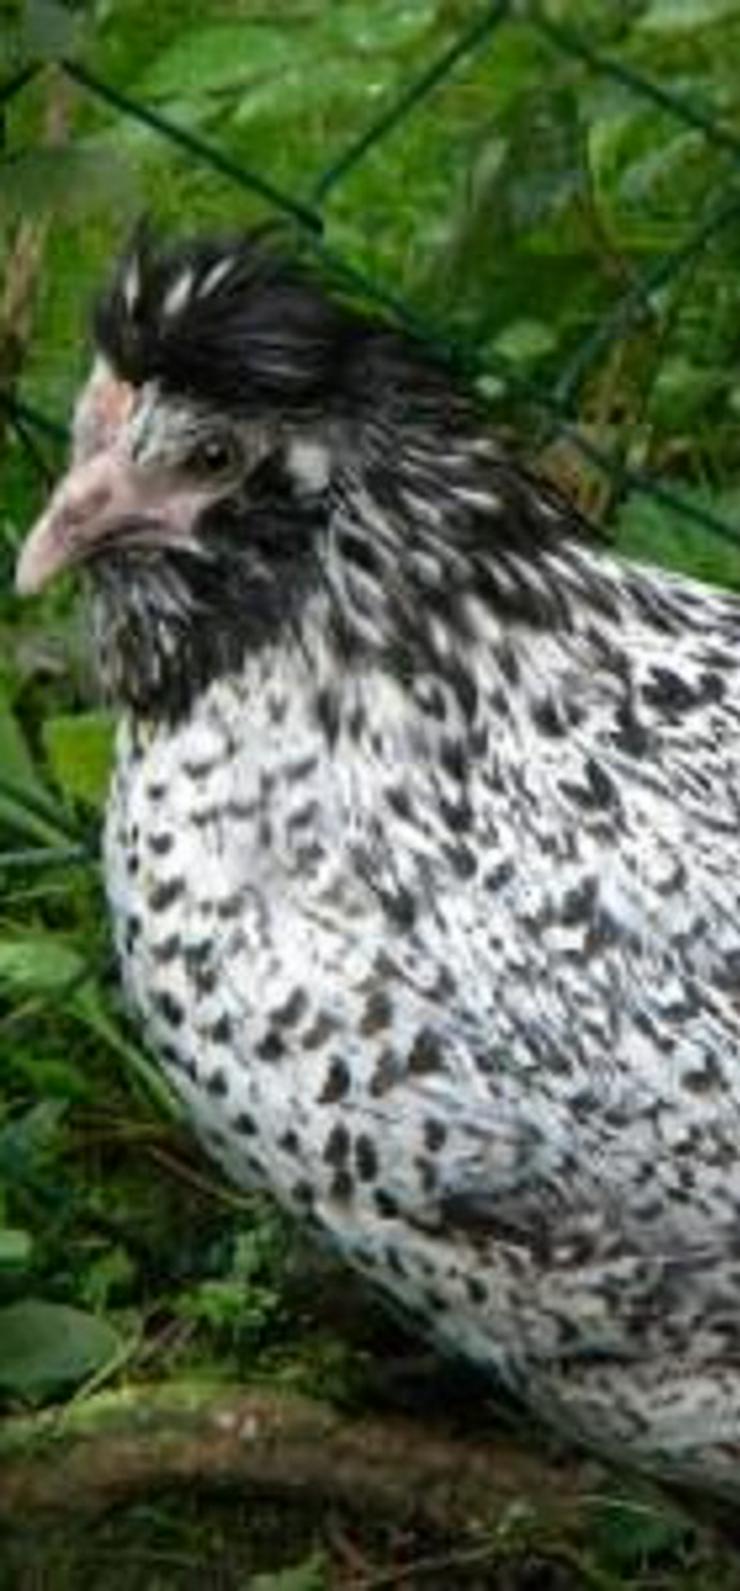 Paduaner Hauben Hühner Druffler Hauben Hühner und andere Hauben Hühner mehrfach Schutz geimpft entwurmt zu verkaufen - Sonstige Nutztiere - Bild 6